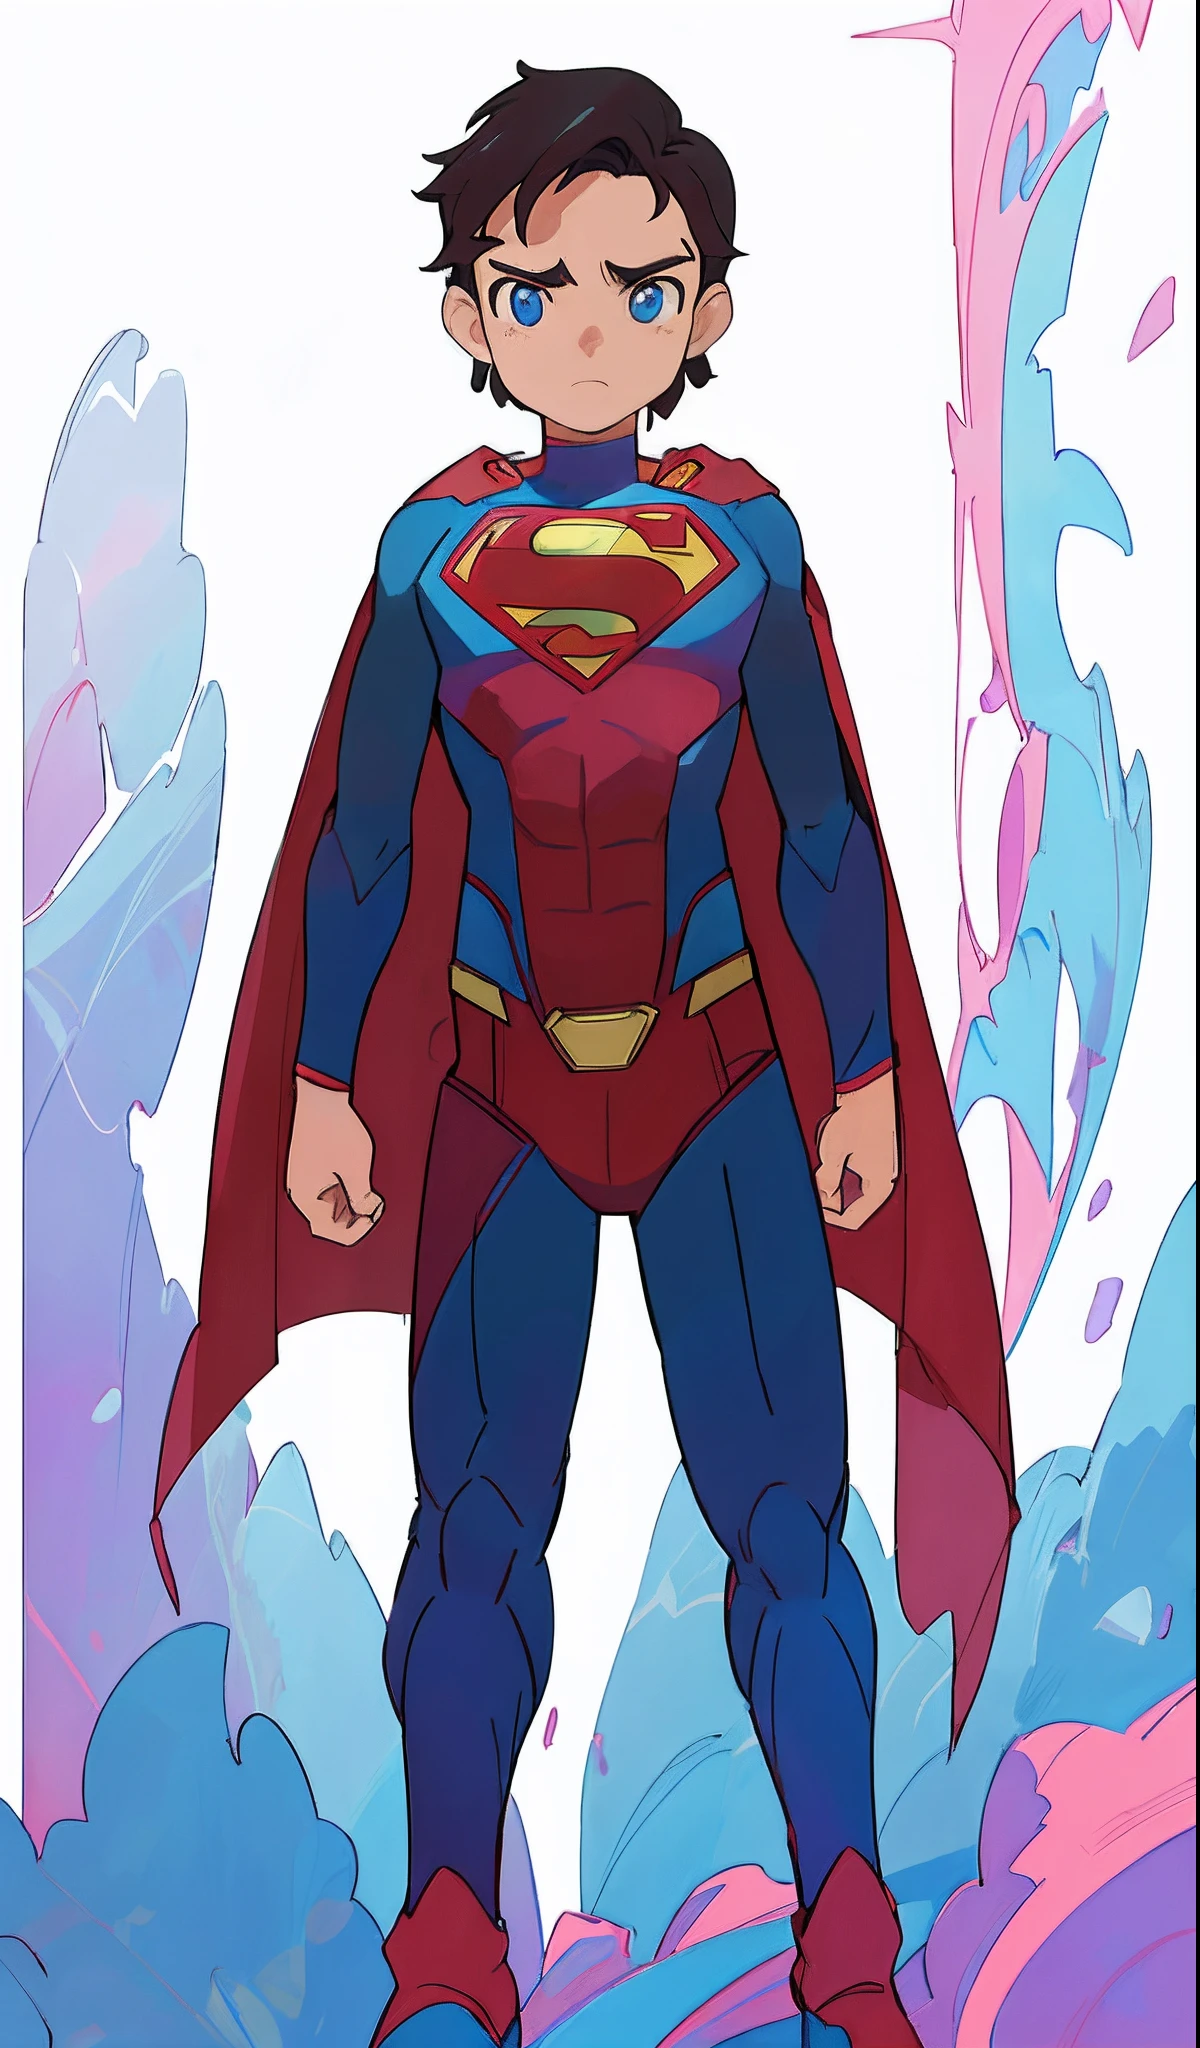 Супермен is standing in front of a background of blue and pink, художественный стиль комиксов dc, официальное искусство, Официальный концепт-арт, концепция полного тела, Супермен, бестекстовый, inspired Виктор Москера, новый концепт костюма, Виктор Москера, стиль комиксов DC, цифровой цветной, вдохновленный Адамом Дарио Килом, Чистая линейка и цвет, Супермен pose, официальный фанарт